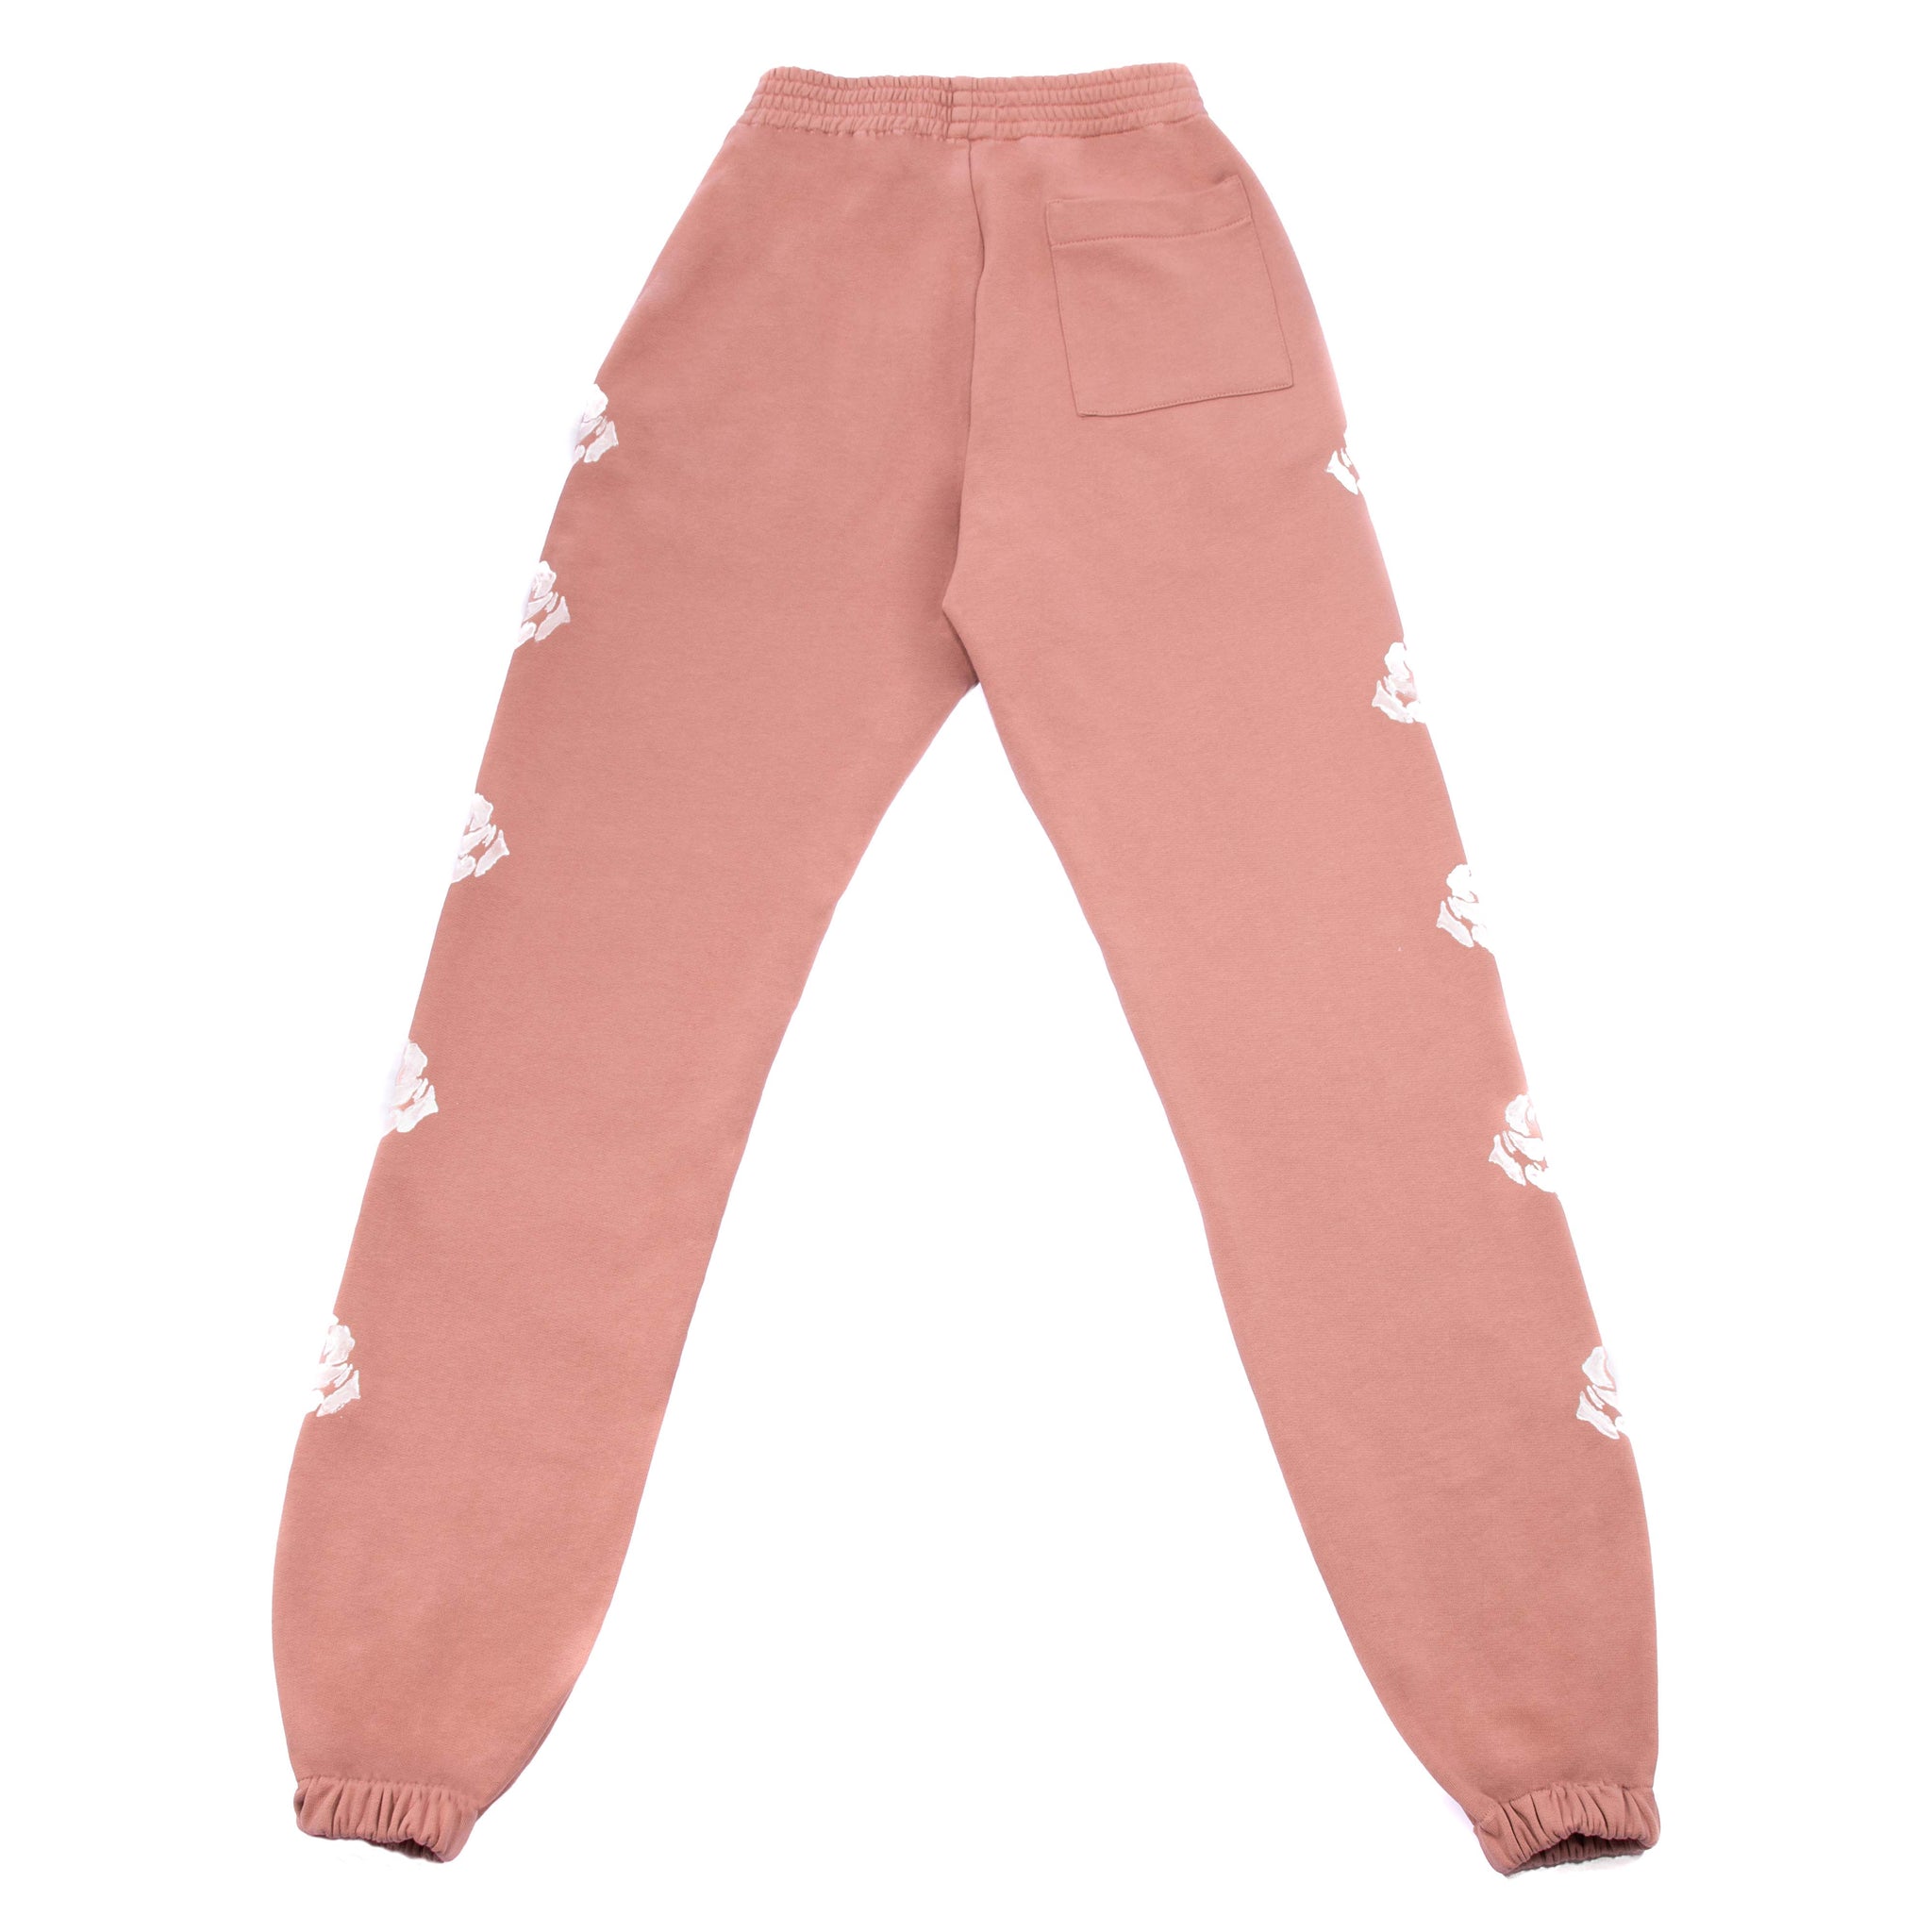 POWDER PINK/WHITE ROSES PANTS